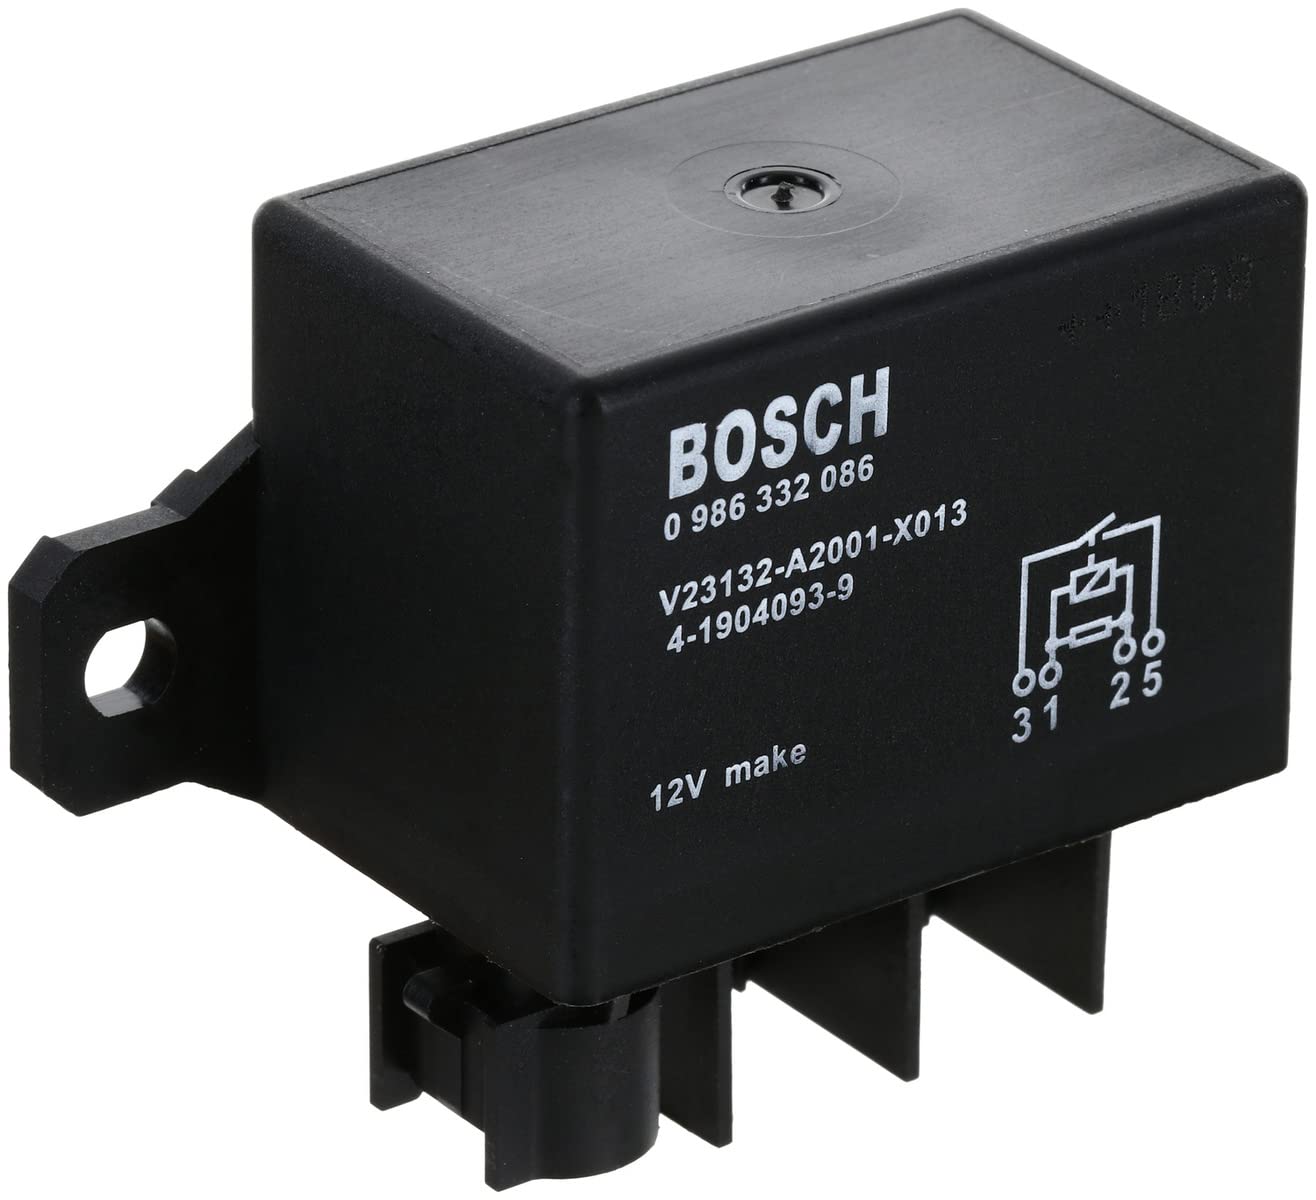 Bosch 0986332086 Leistungsrelais 12V 150A, IP5K4, Betriebstemperatur von -40° C bis 100° C, Wechselrelais, 5 Pin Relais von Bosch Automotive